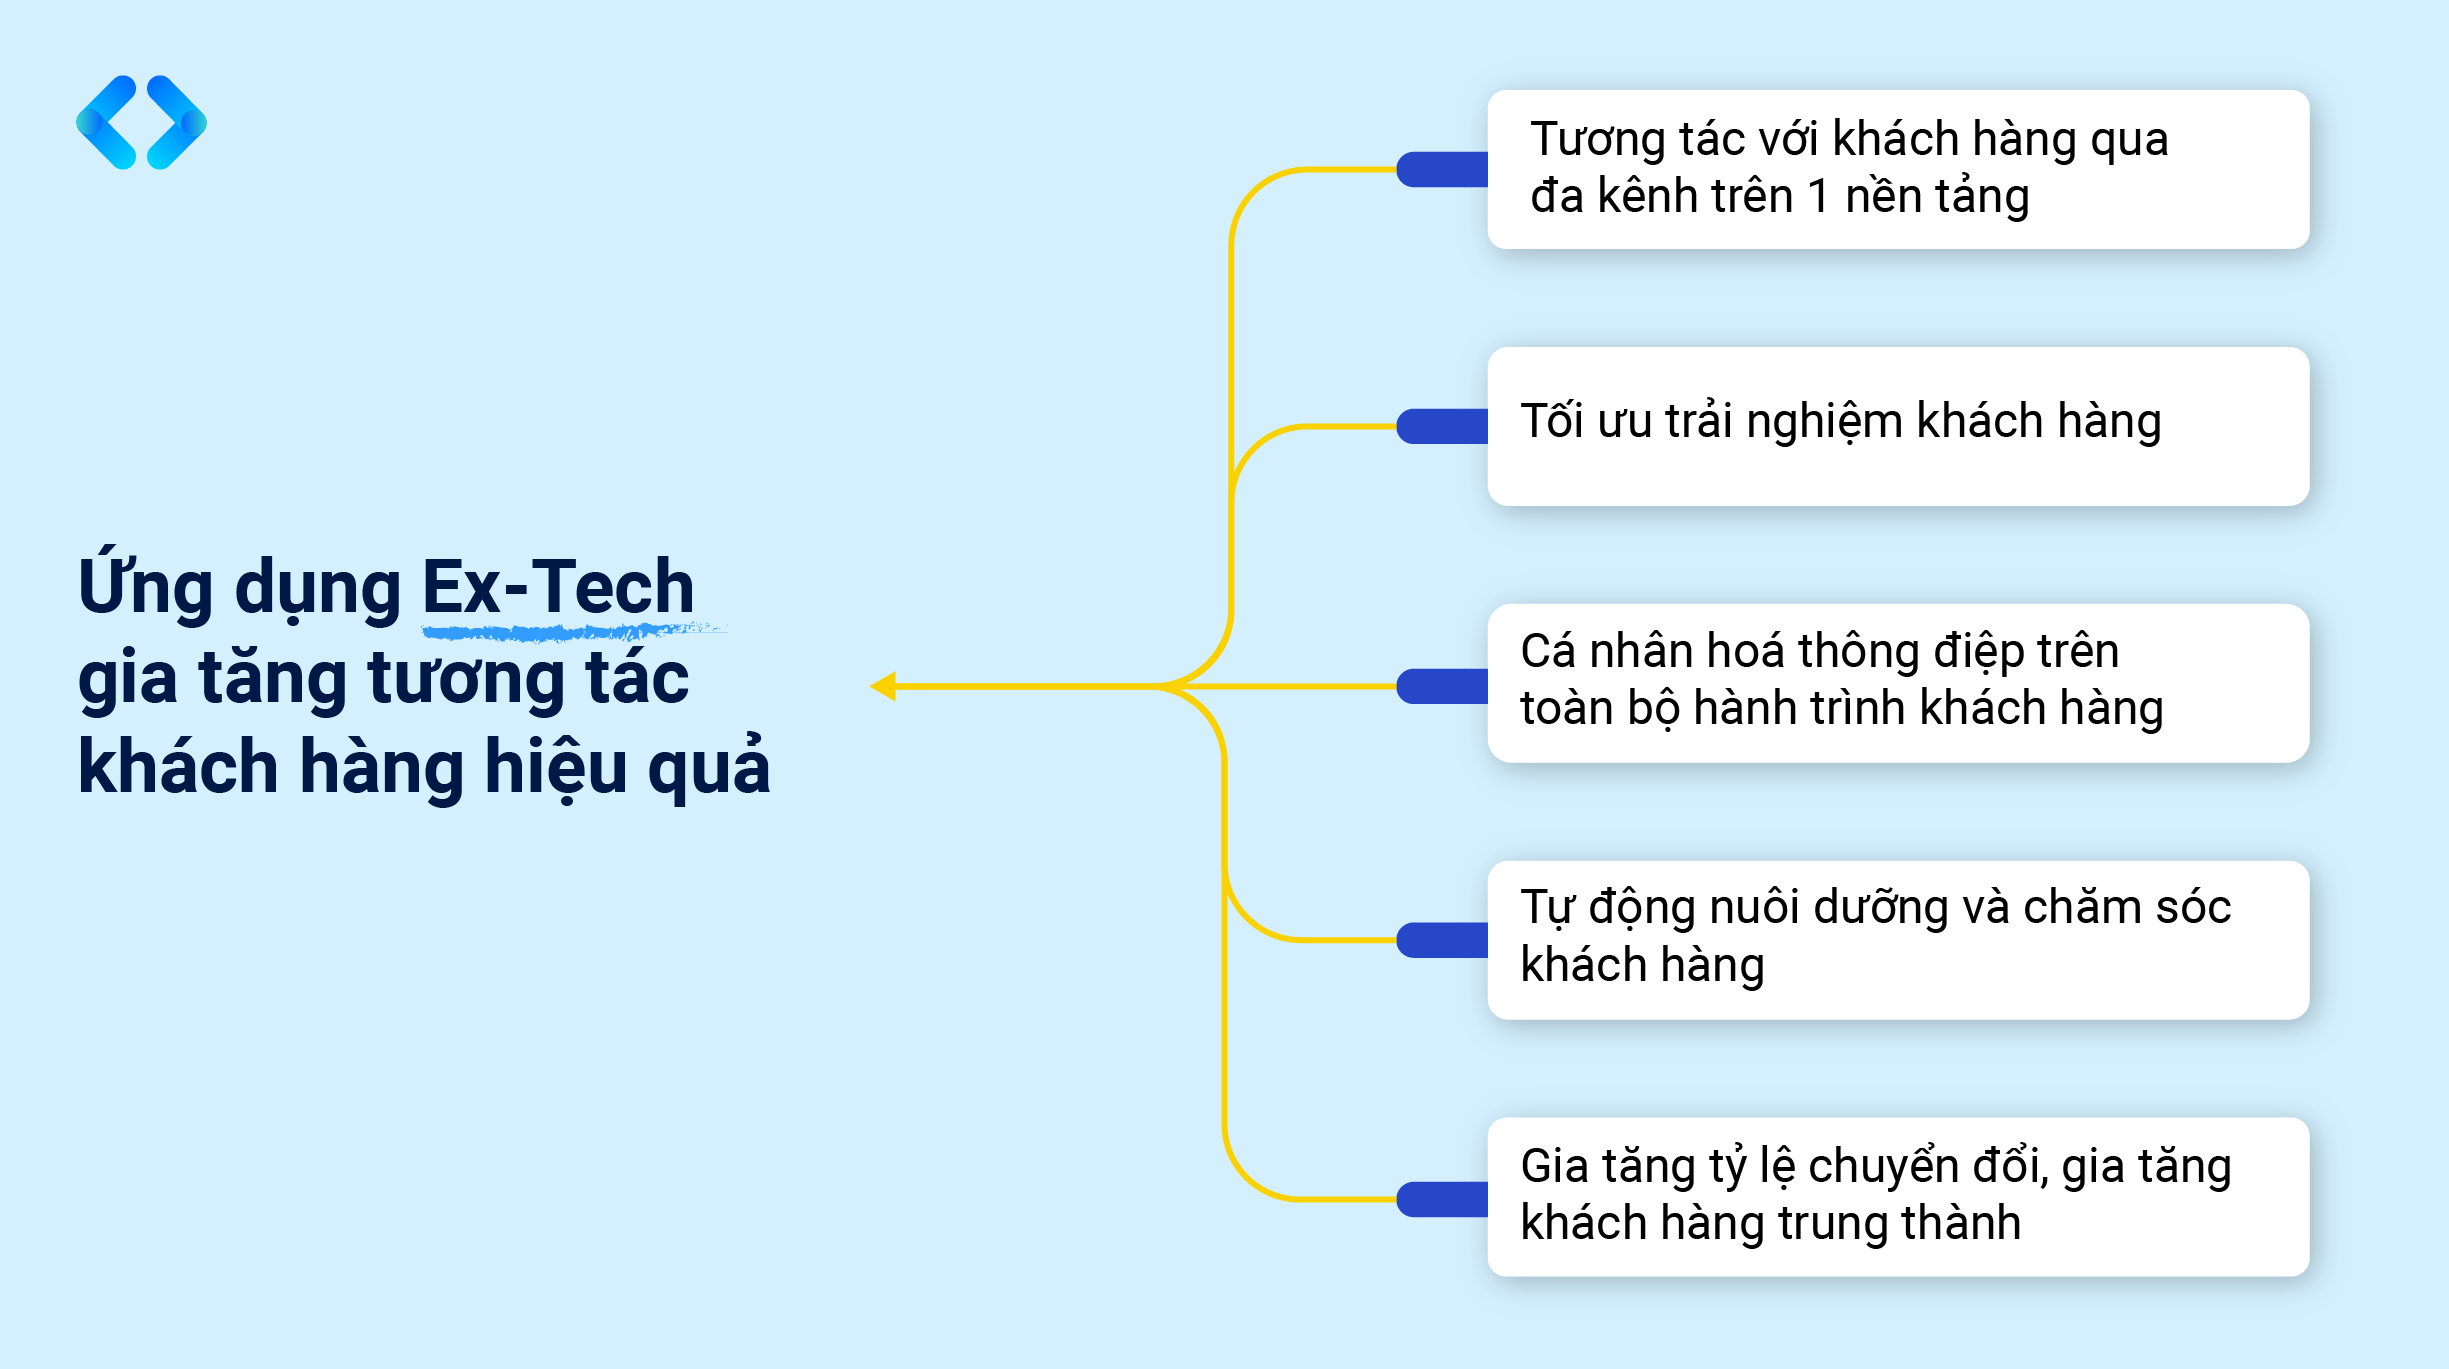 giatang_tuong_tac_khach_hang_voi_ex_tech